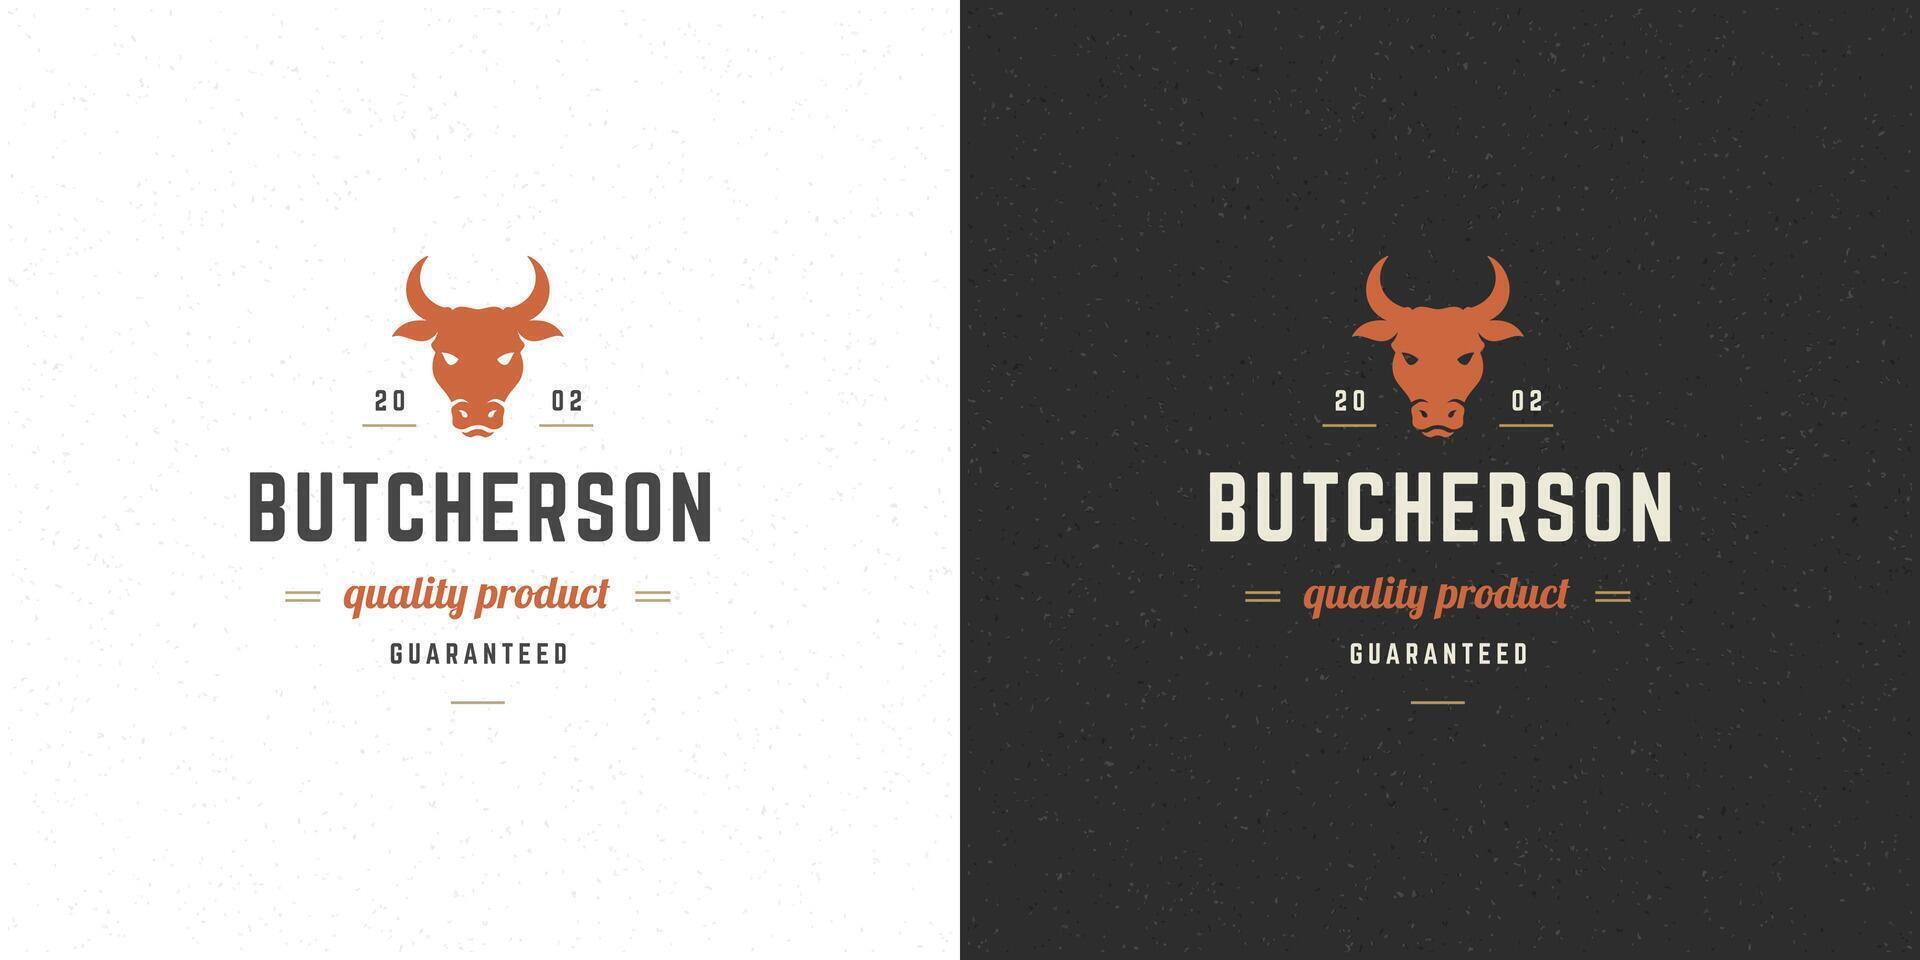 macellaio negozio logo illustrazione mucca testa silhouette bene per azienda agricola o ristorante distintivo vettore